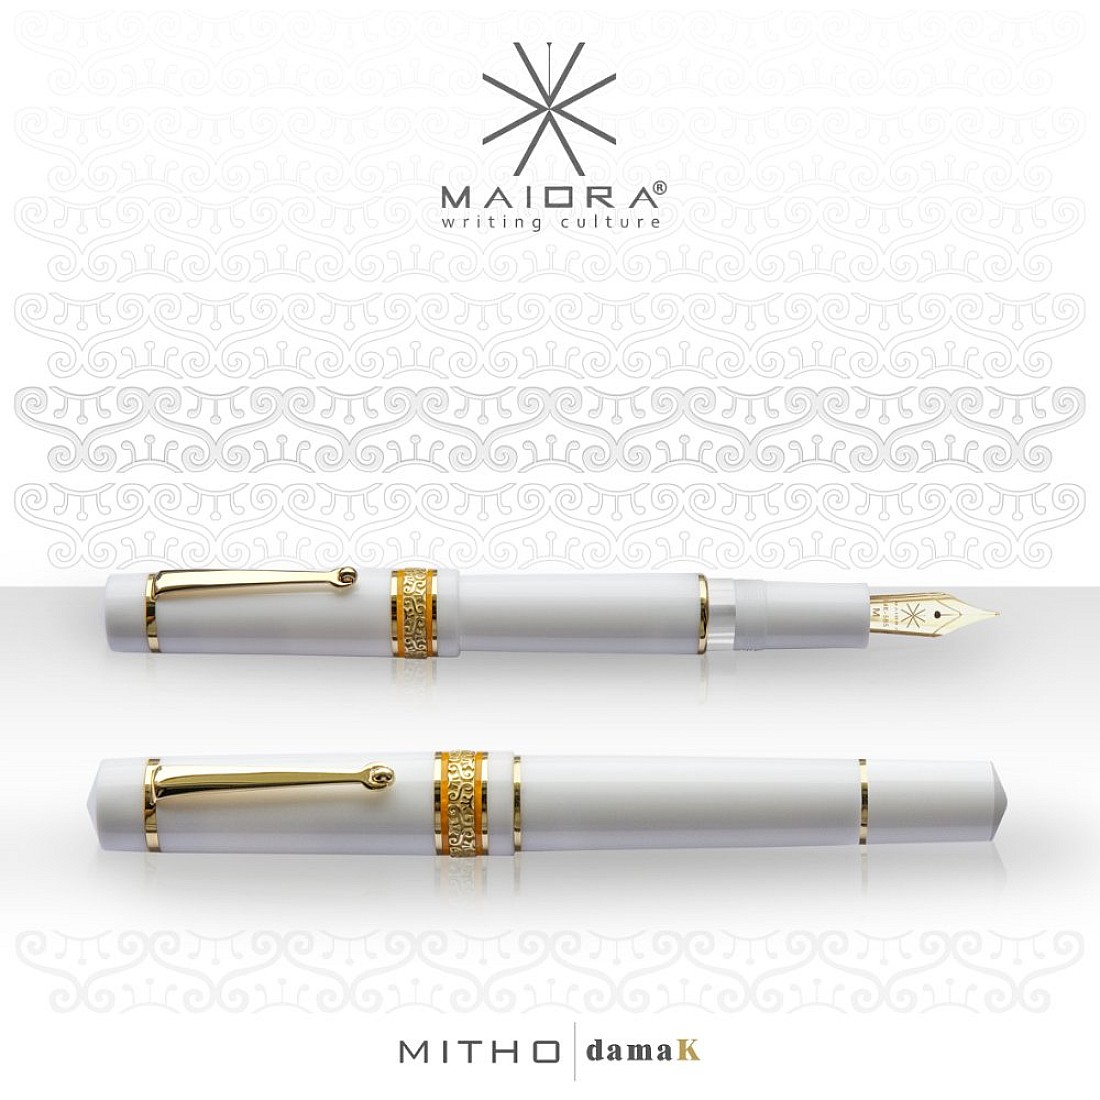 Maiora Mitho K Dama (Old Lady) Fountain pen